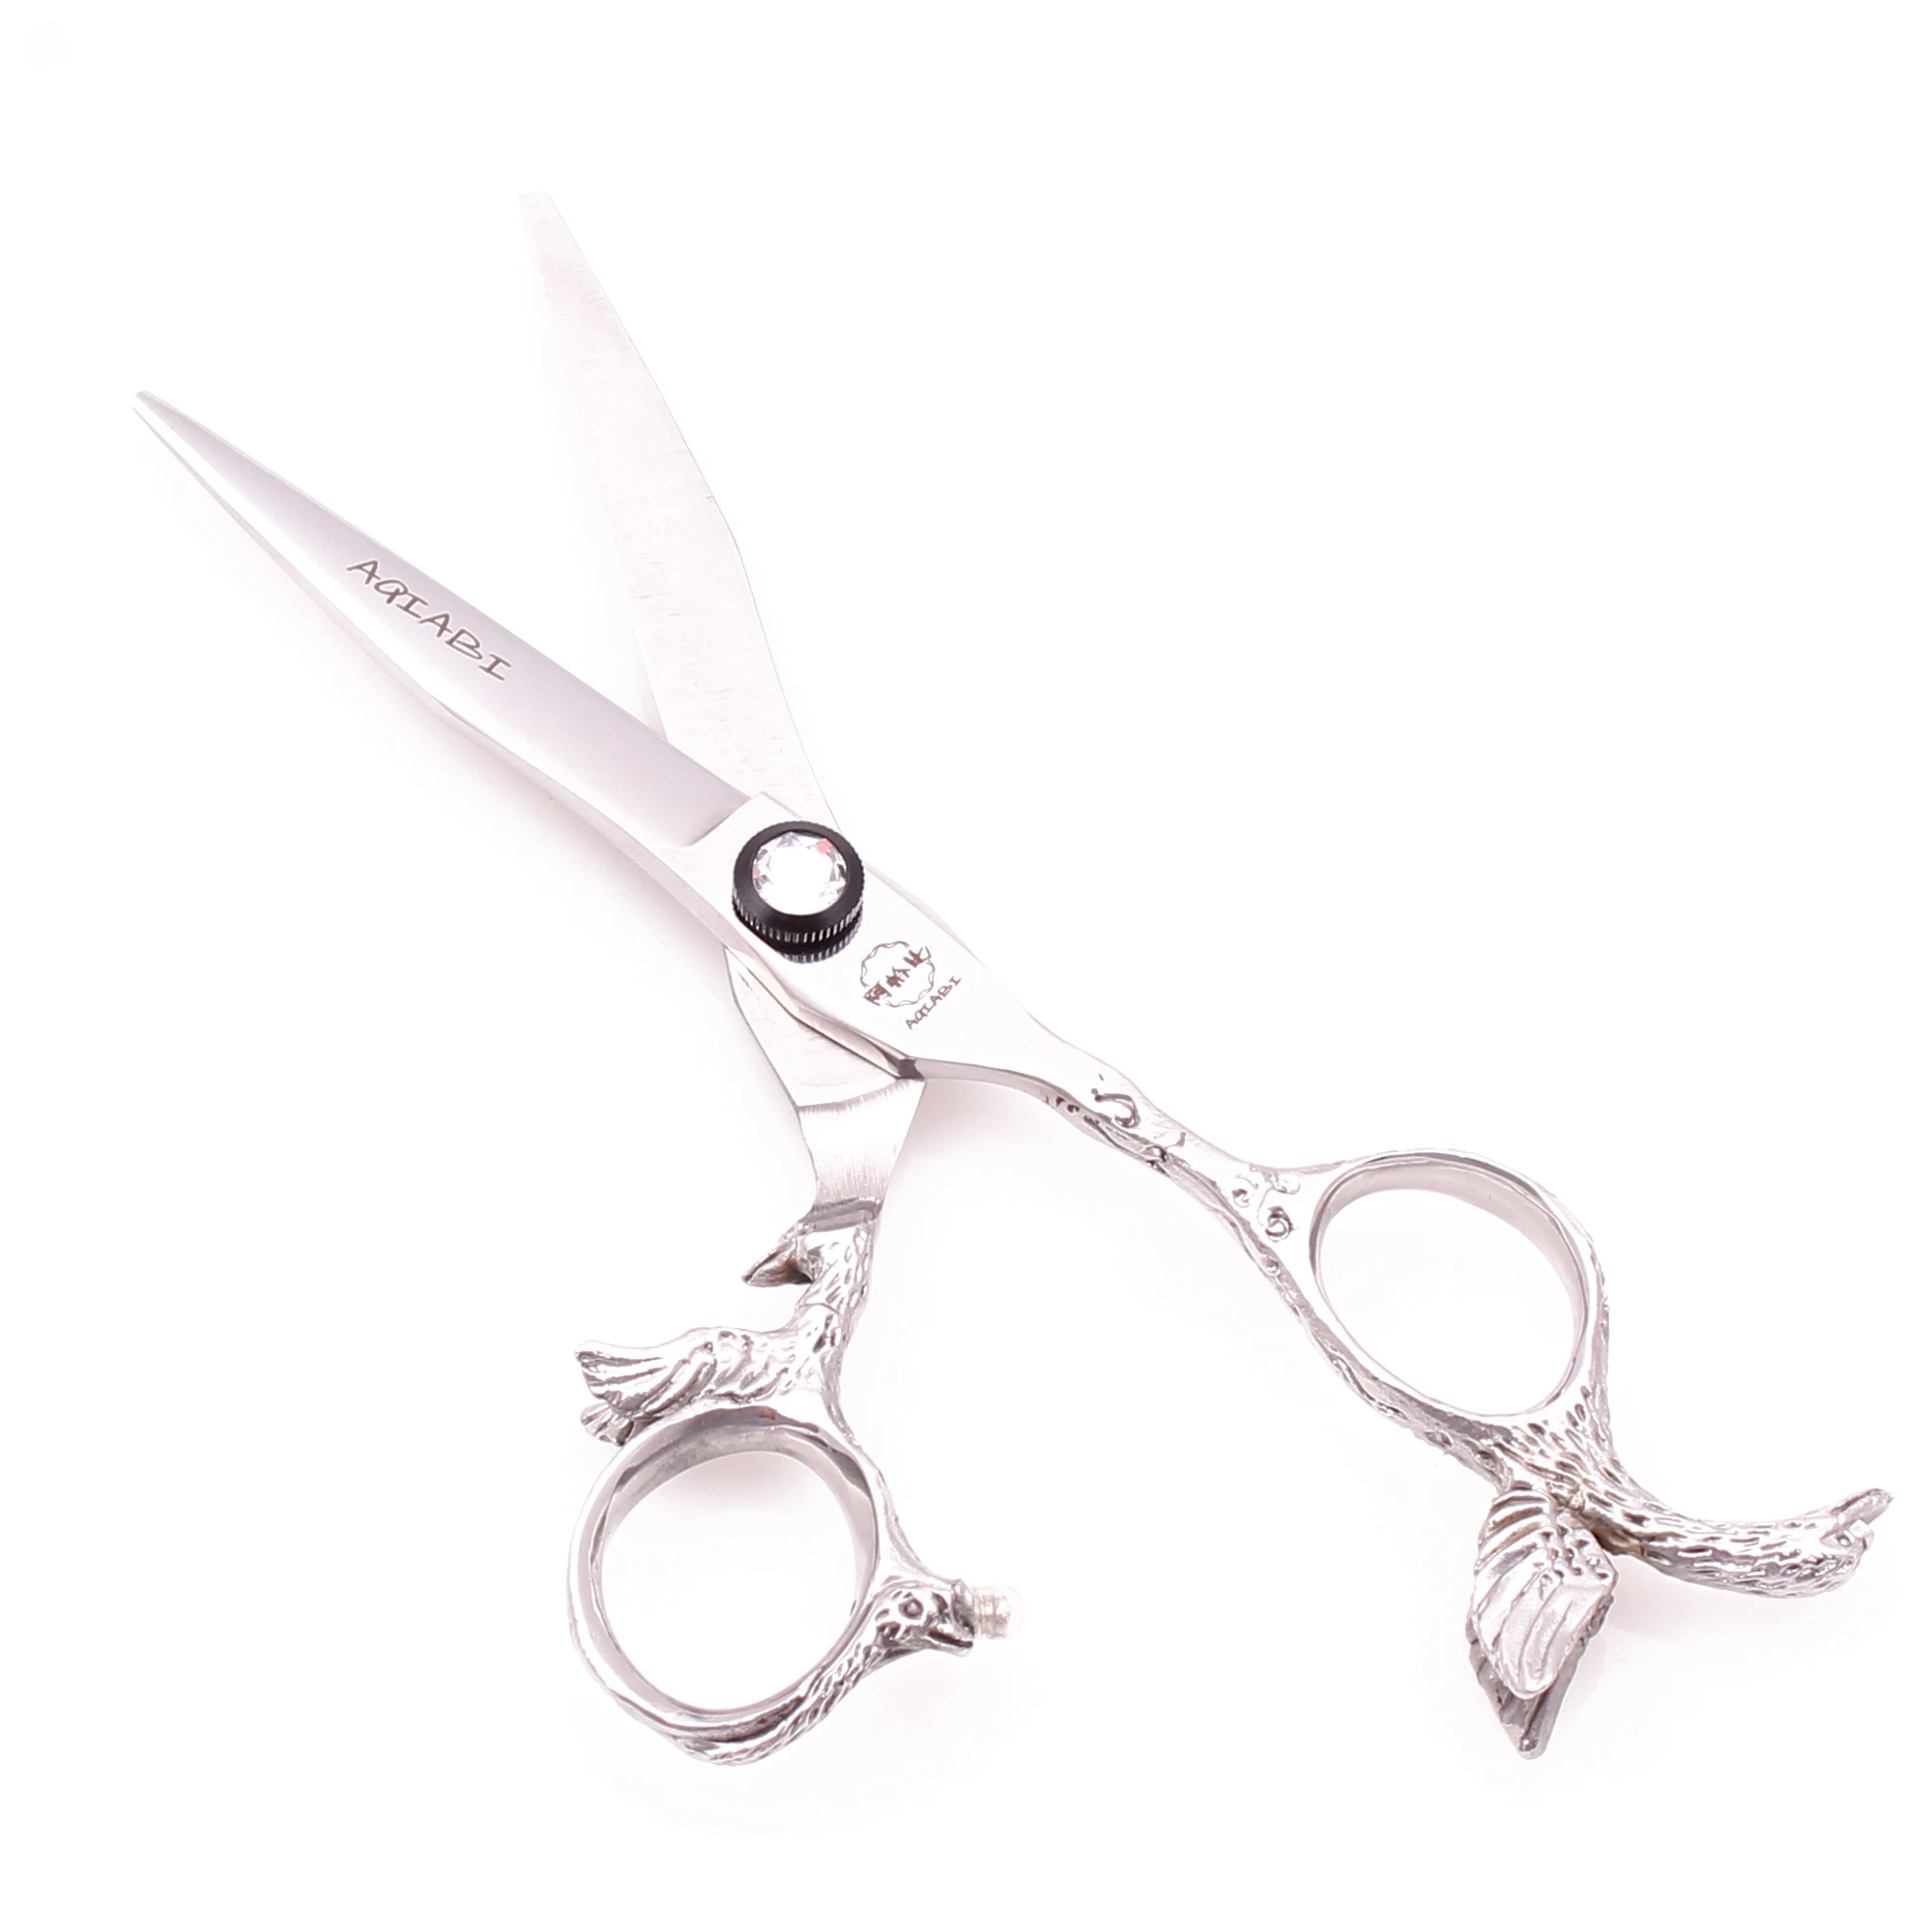 Парикмахерские ножницы A9023 5," 16 см 440C AQIABI филировочные ножницы для стрижки волос Профессиональные ножницы для волос Парикмахерские ножницы